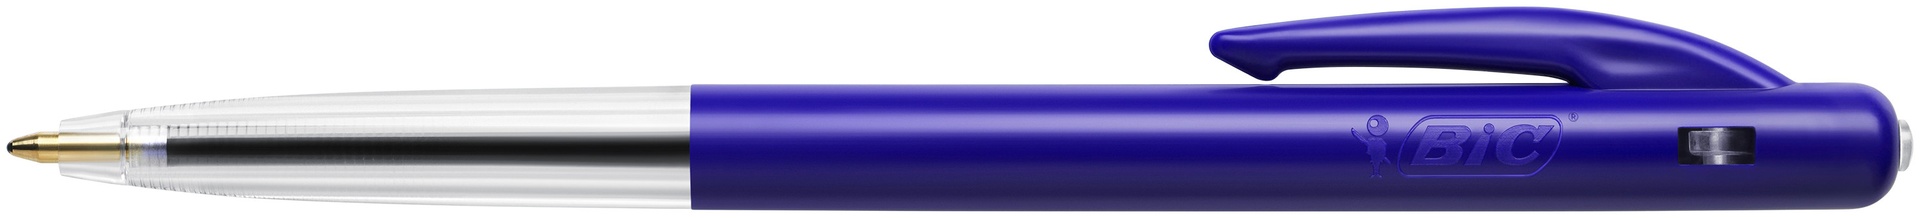 [2213221] Kulpenna Bic Clic M10 blå